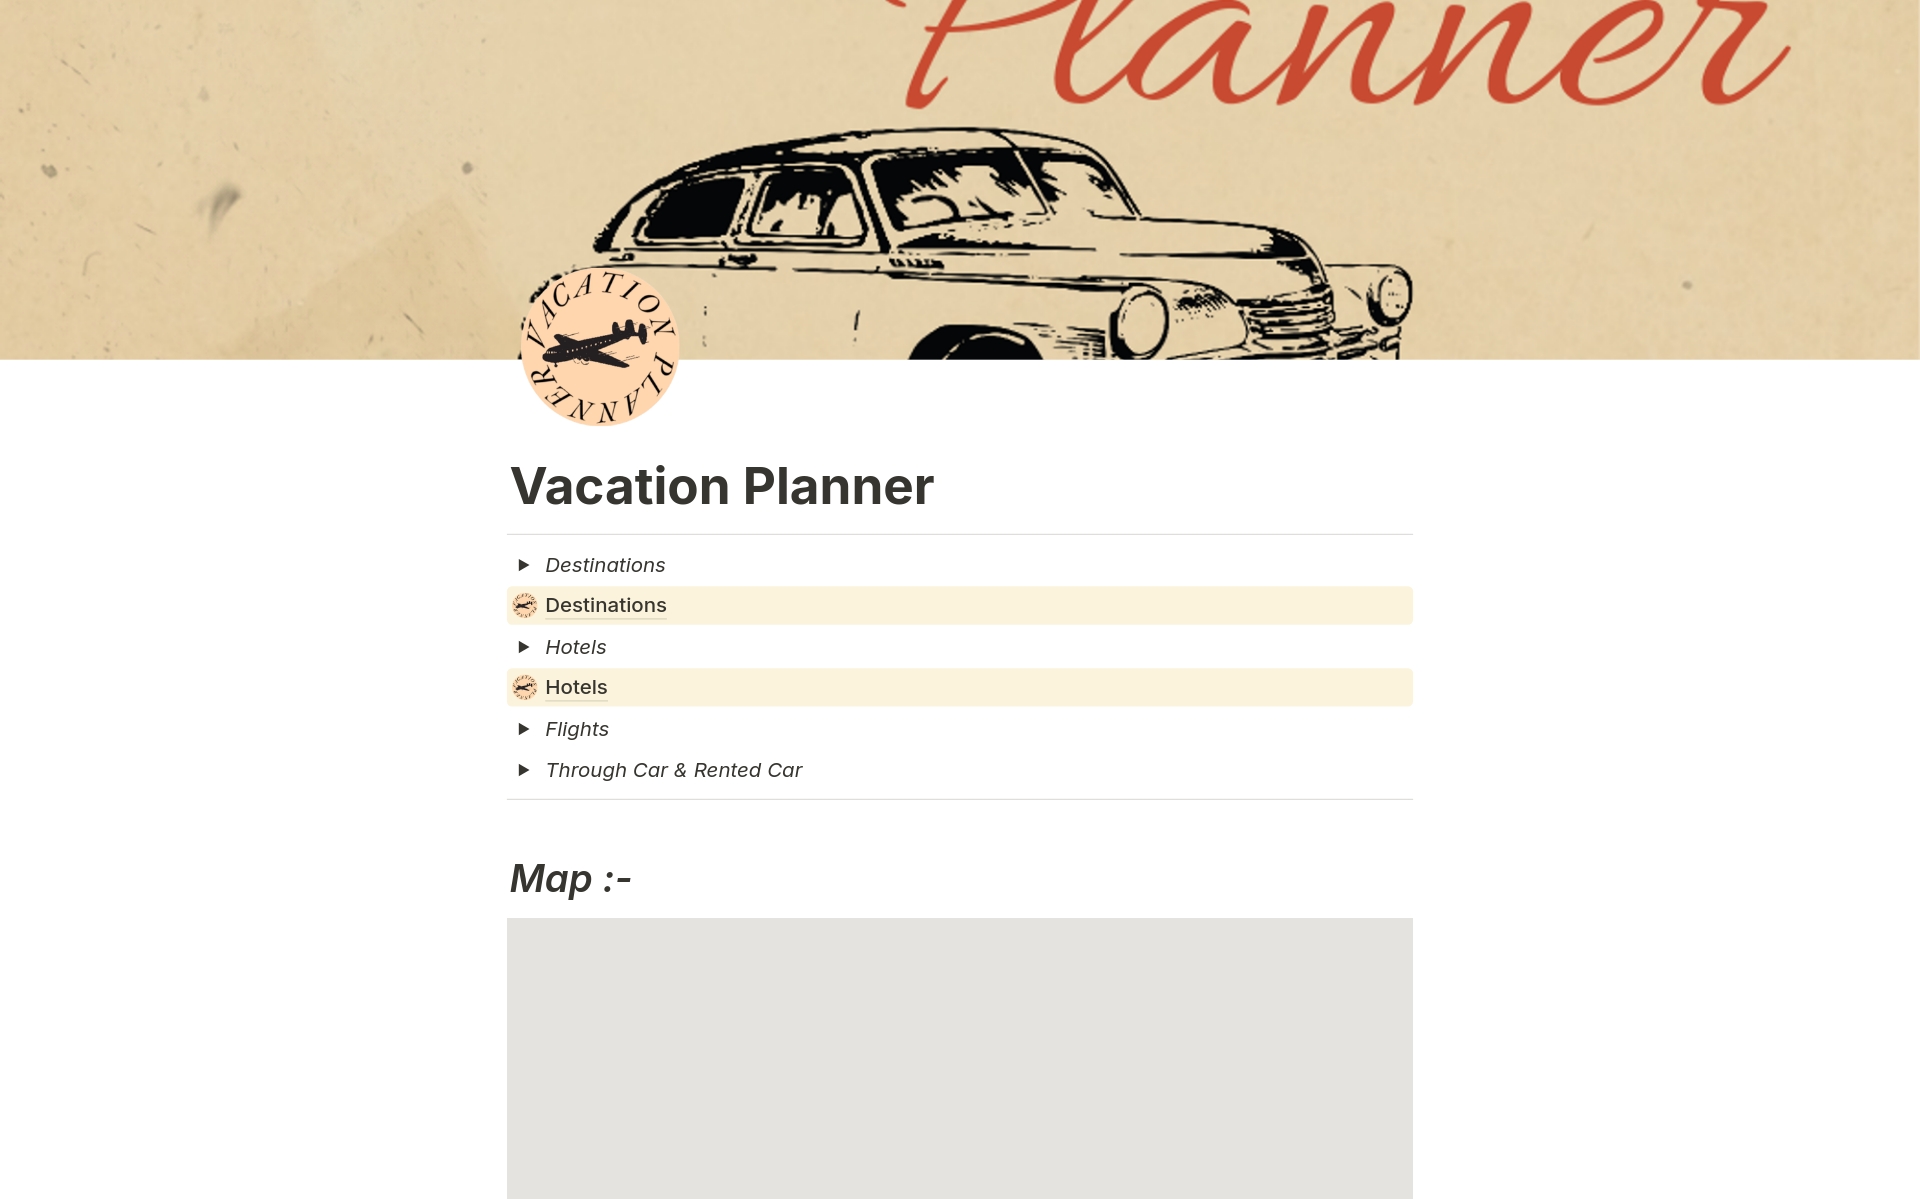 Vista previa de plantilla para Vacation Planner 